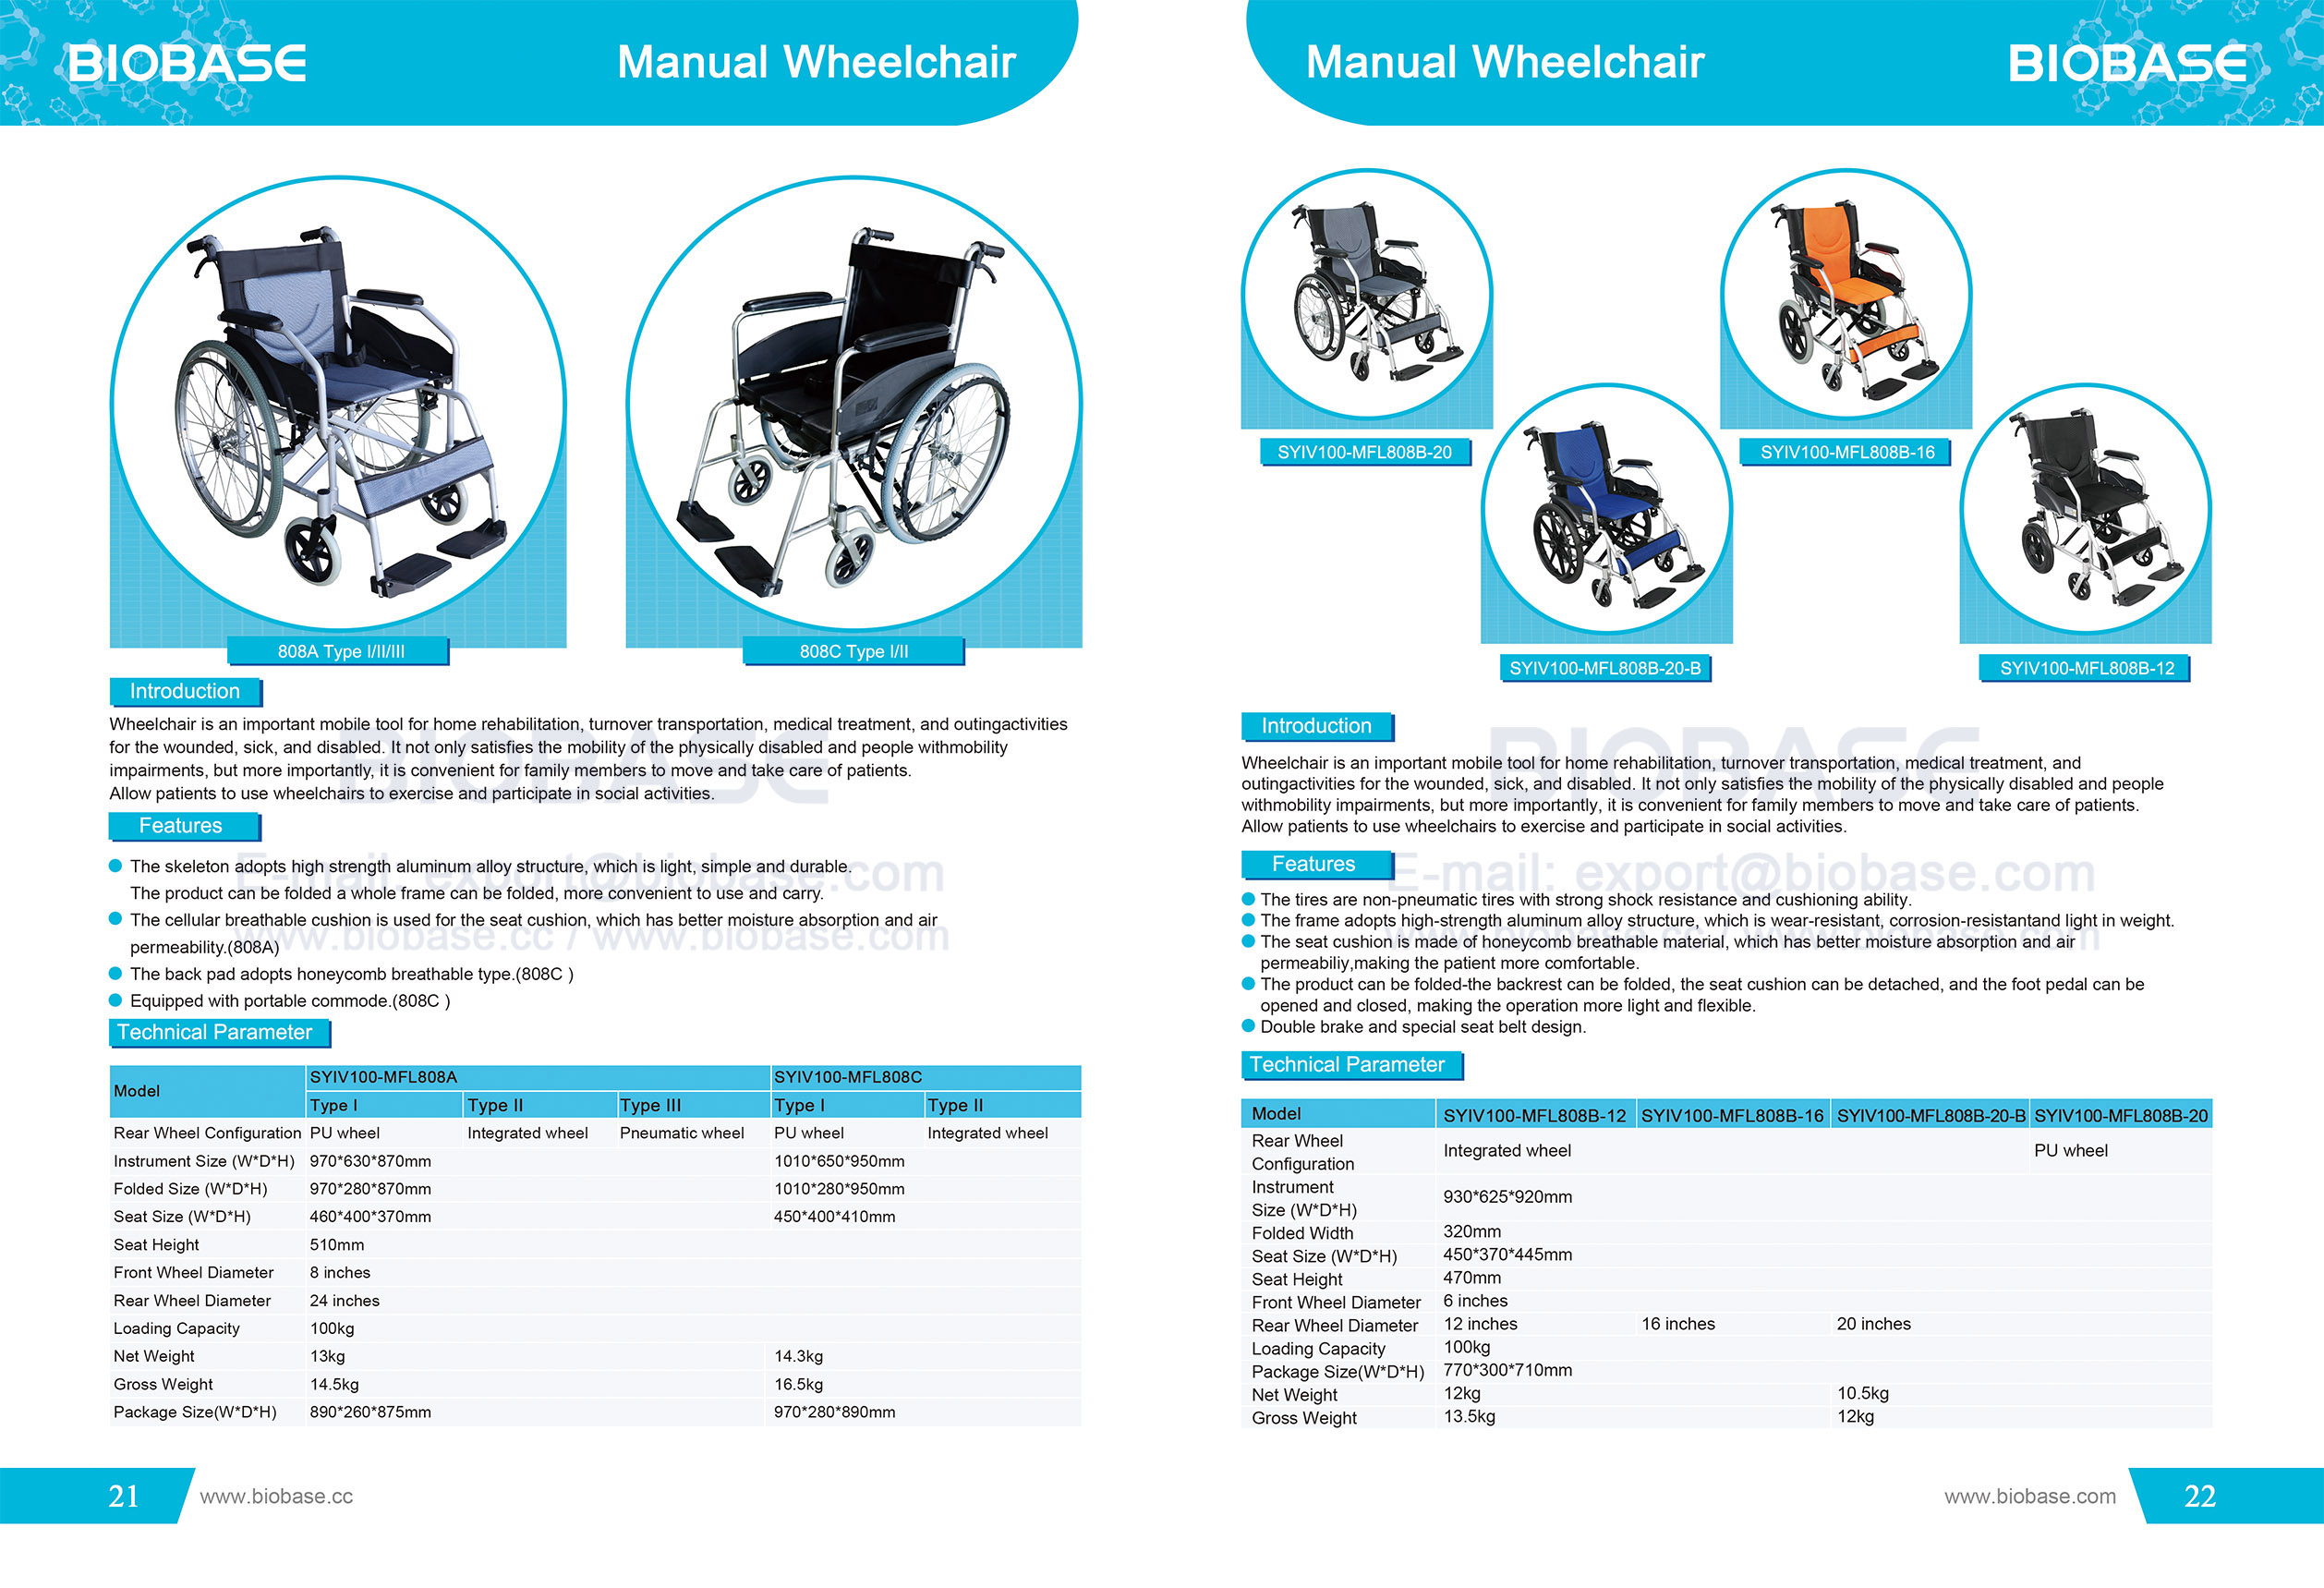 21-22 Manual Wheelchair